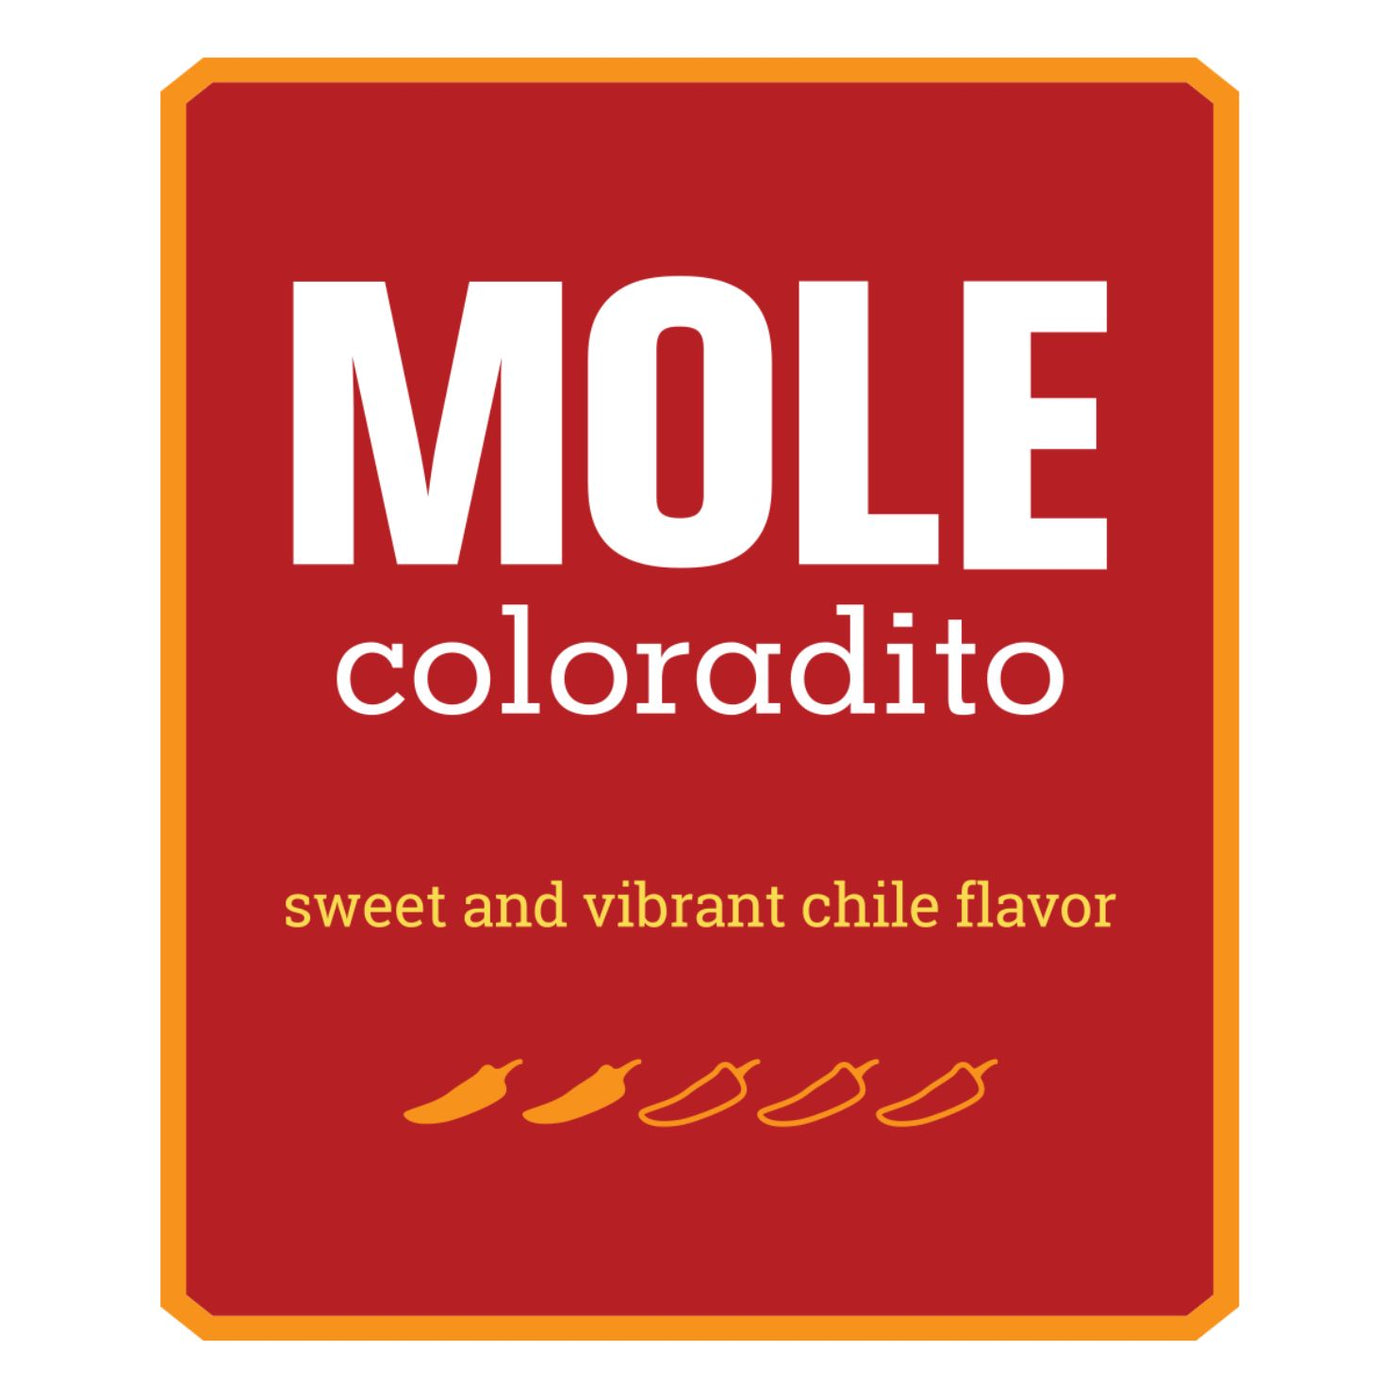 Red Mole Coloradito Label Heat Level 2/5 chiles